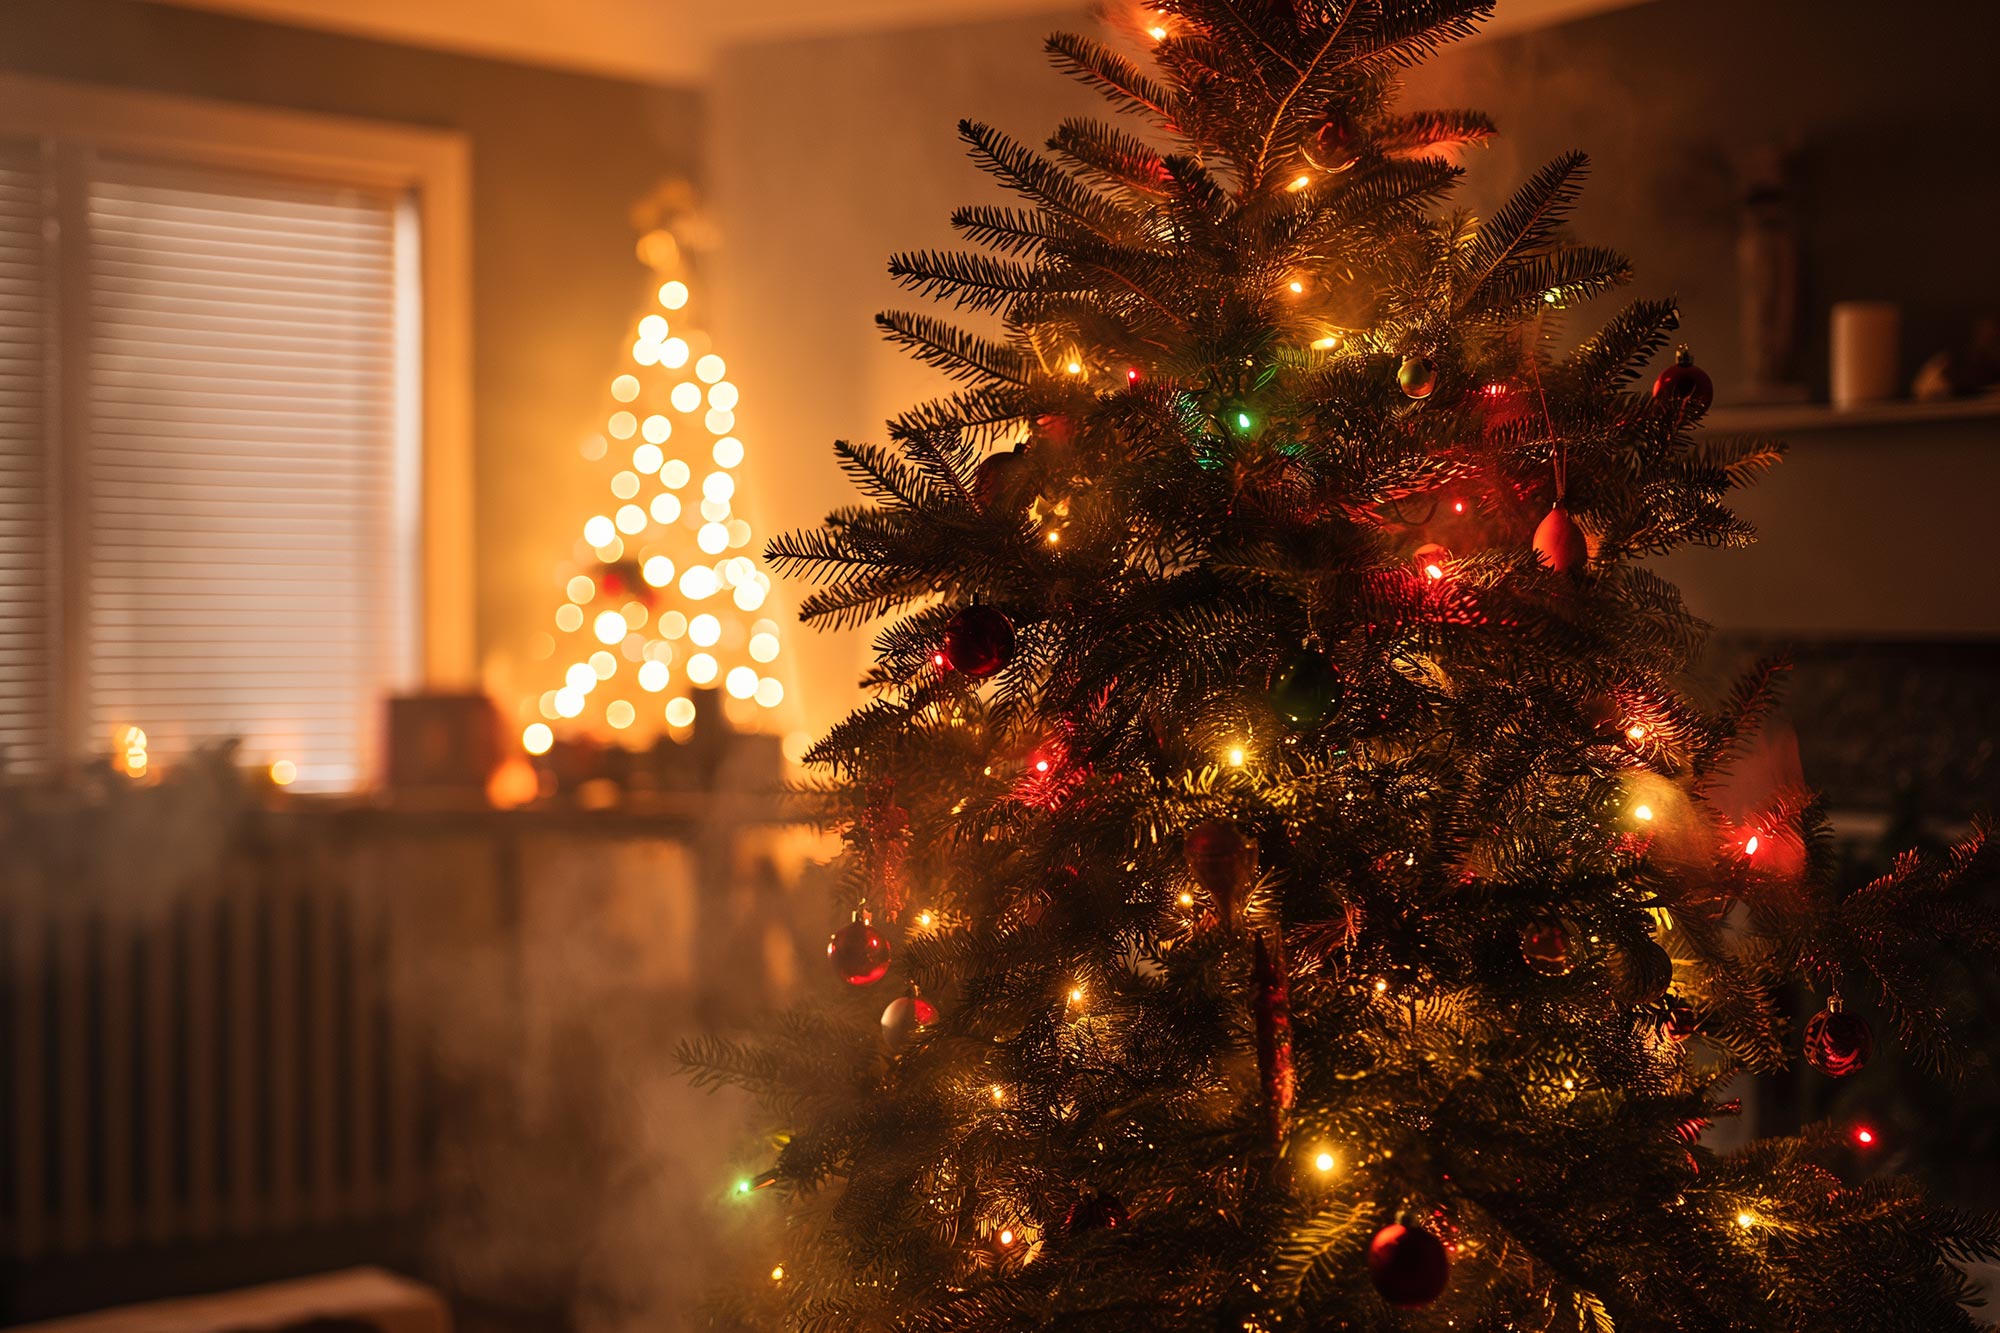 Los árboles de Navidad y su sorpresa invisible en la química del elegancia interior